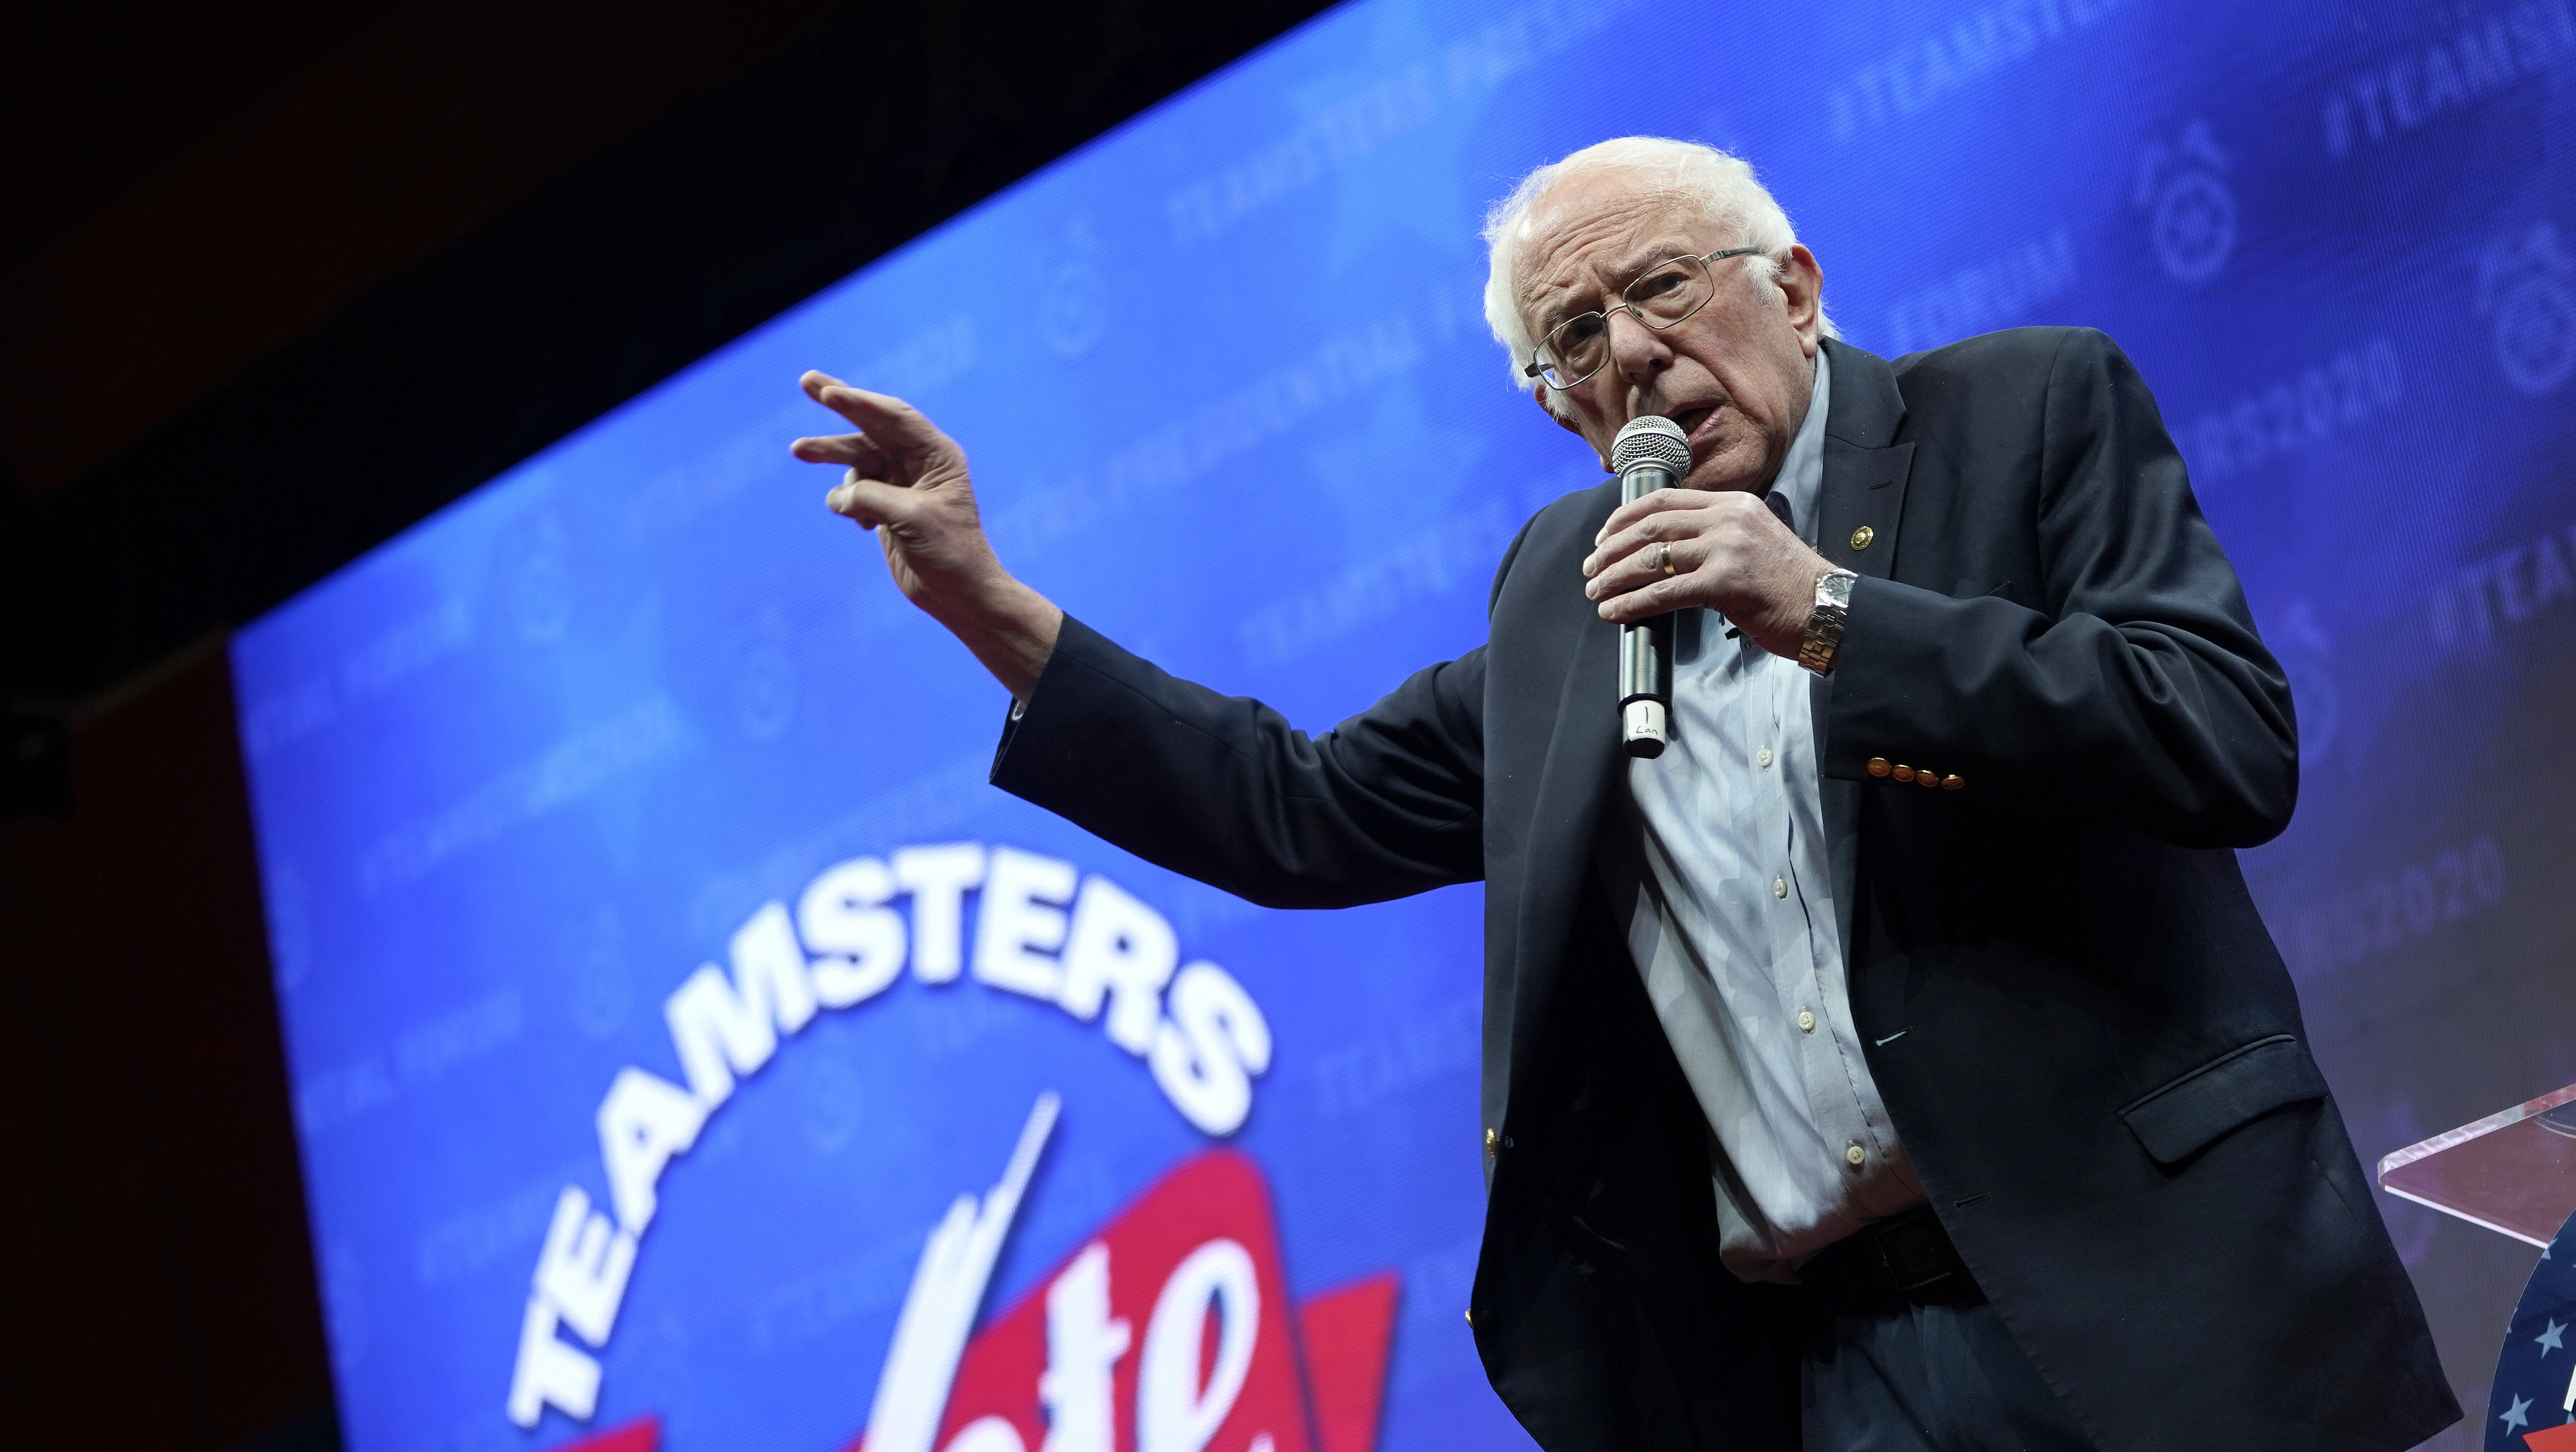 Divided Democrats May Unite Behind Sanders